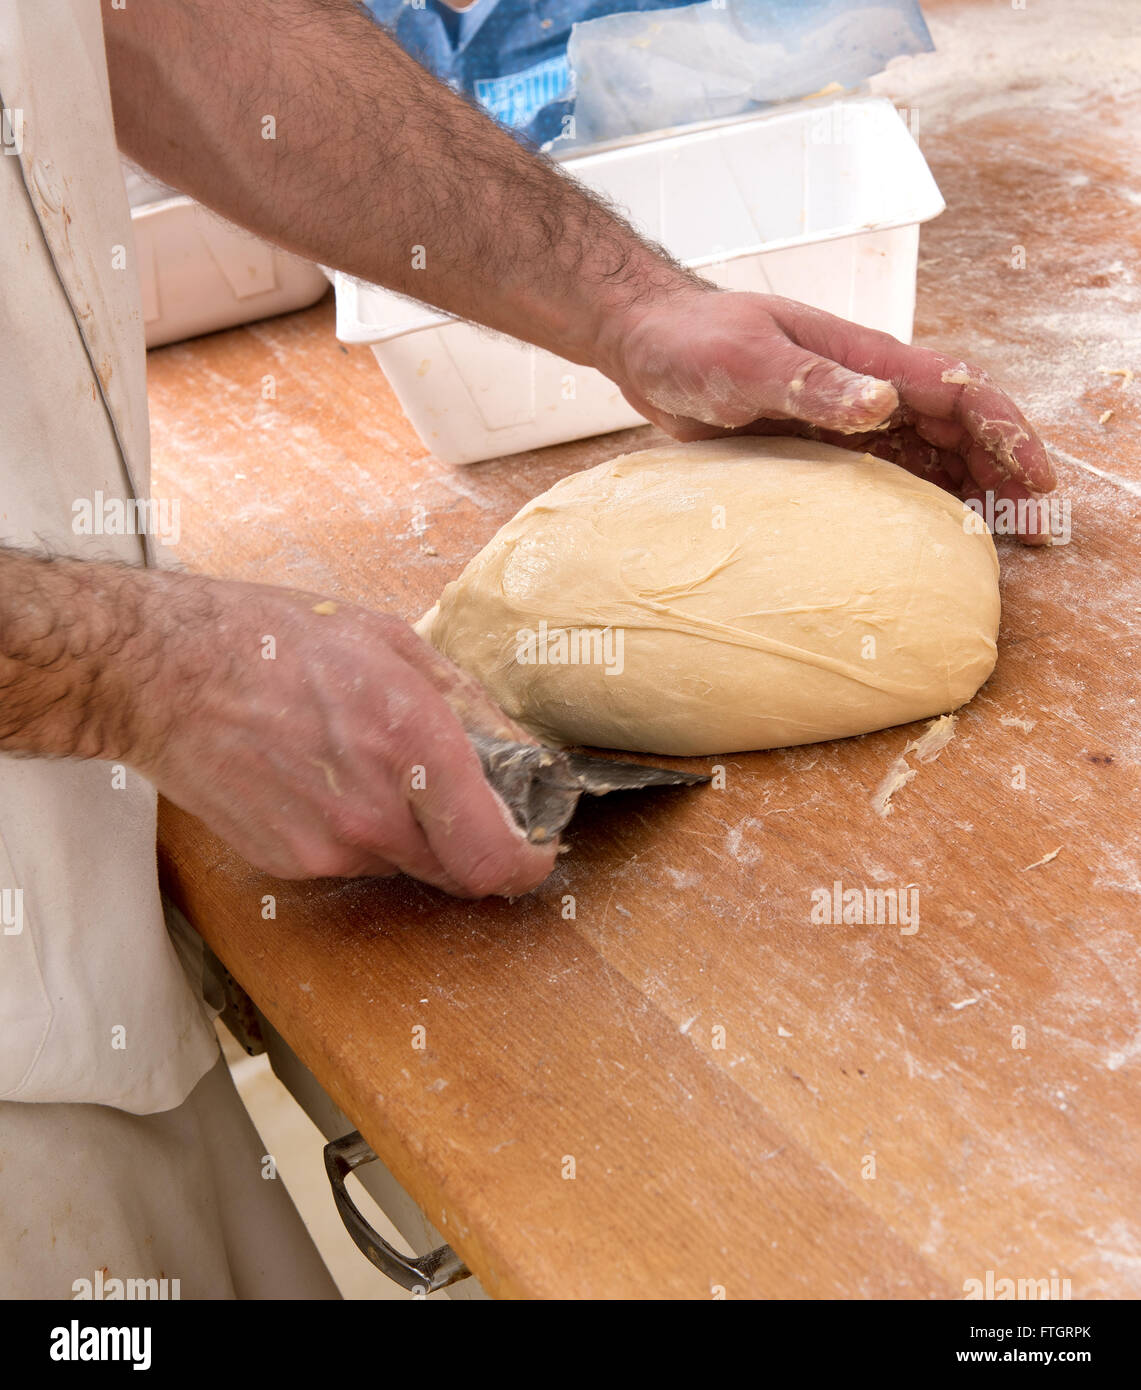 Baker la préparation d'une miche de pain à l'aide d'un racloir et sa main pour façonner et former la pâte sur un comptoir en bois Banque D'Images